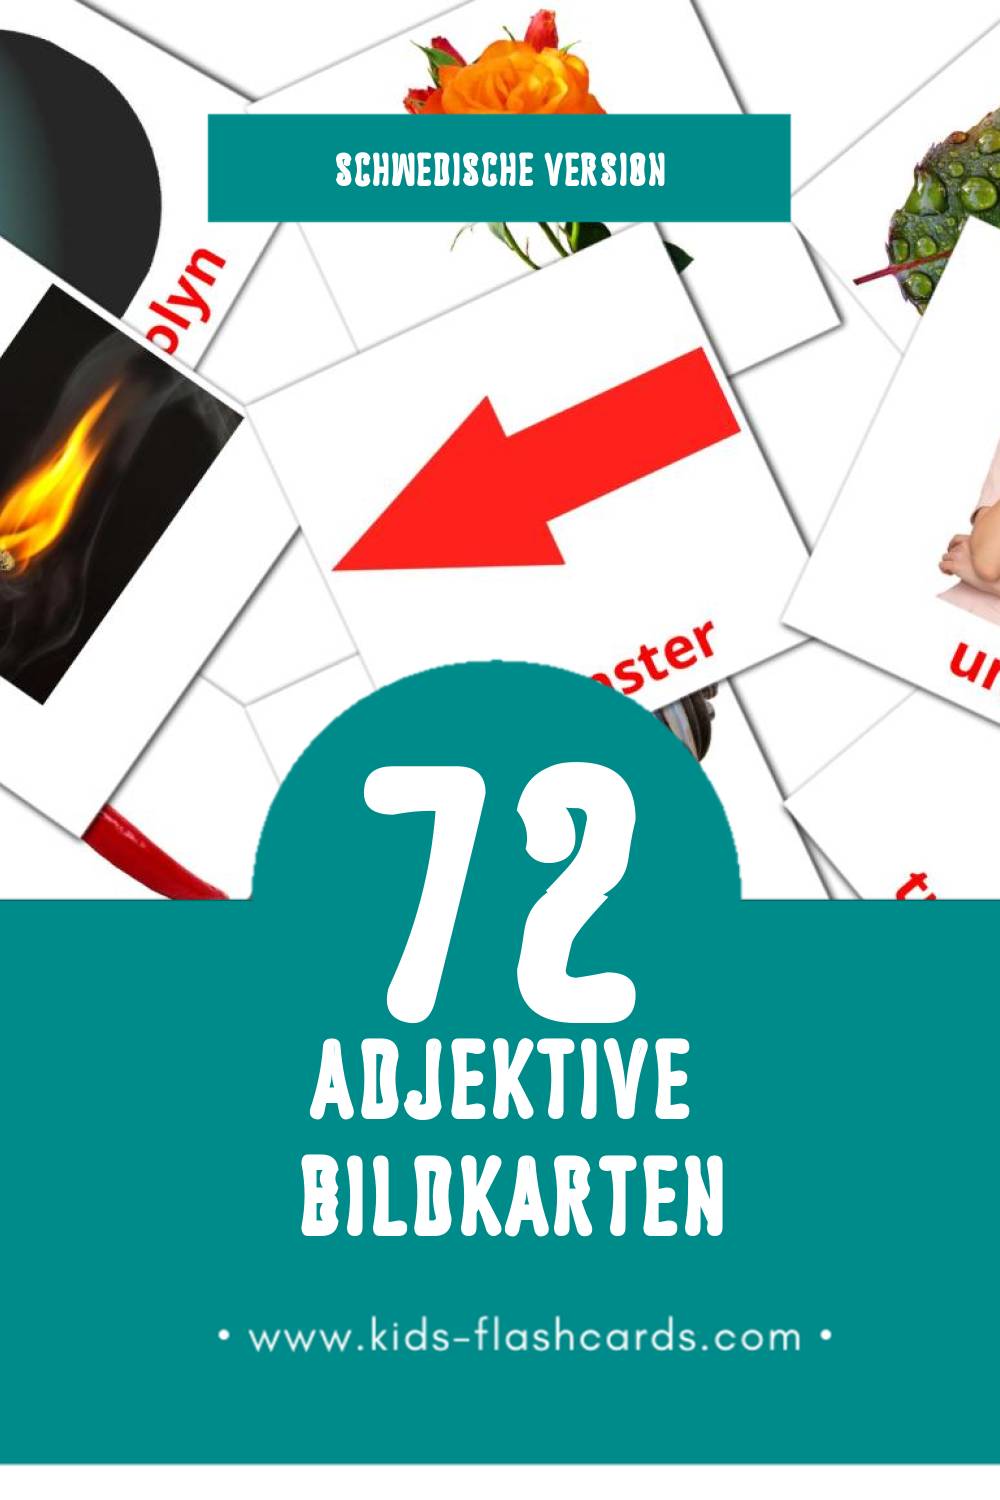 Visual Adjektiv Flashcards für Kleinkinder (72 Karten in Schwedisch)